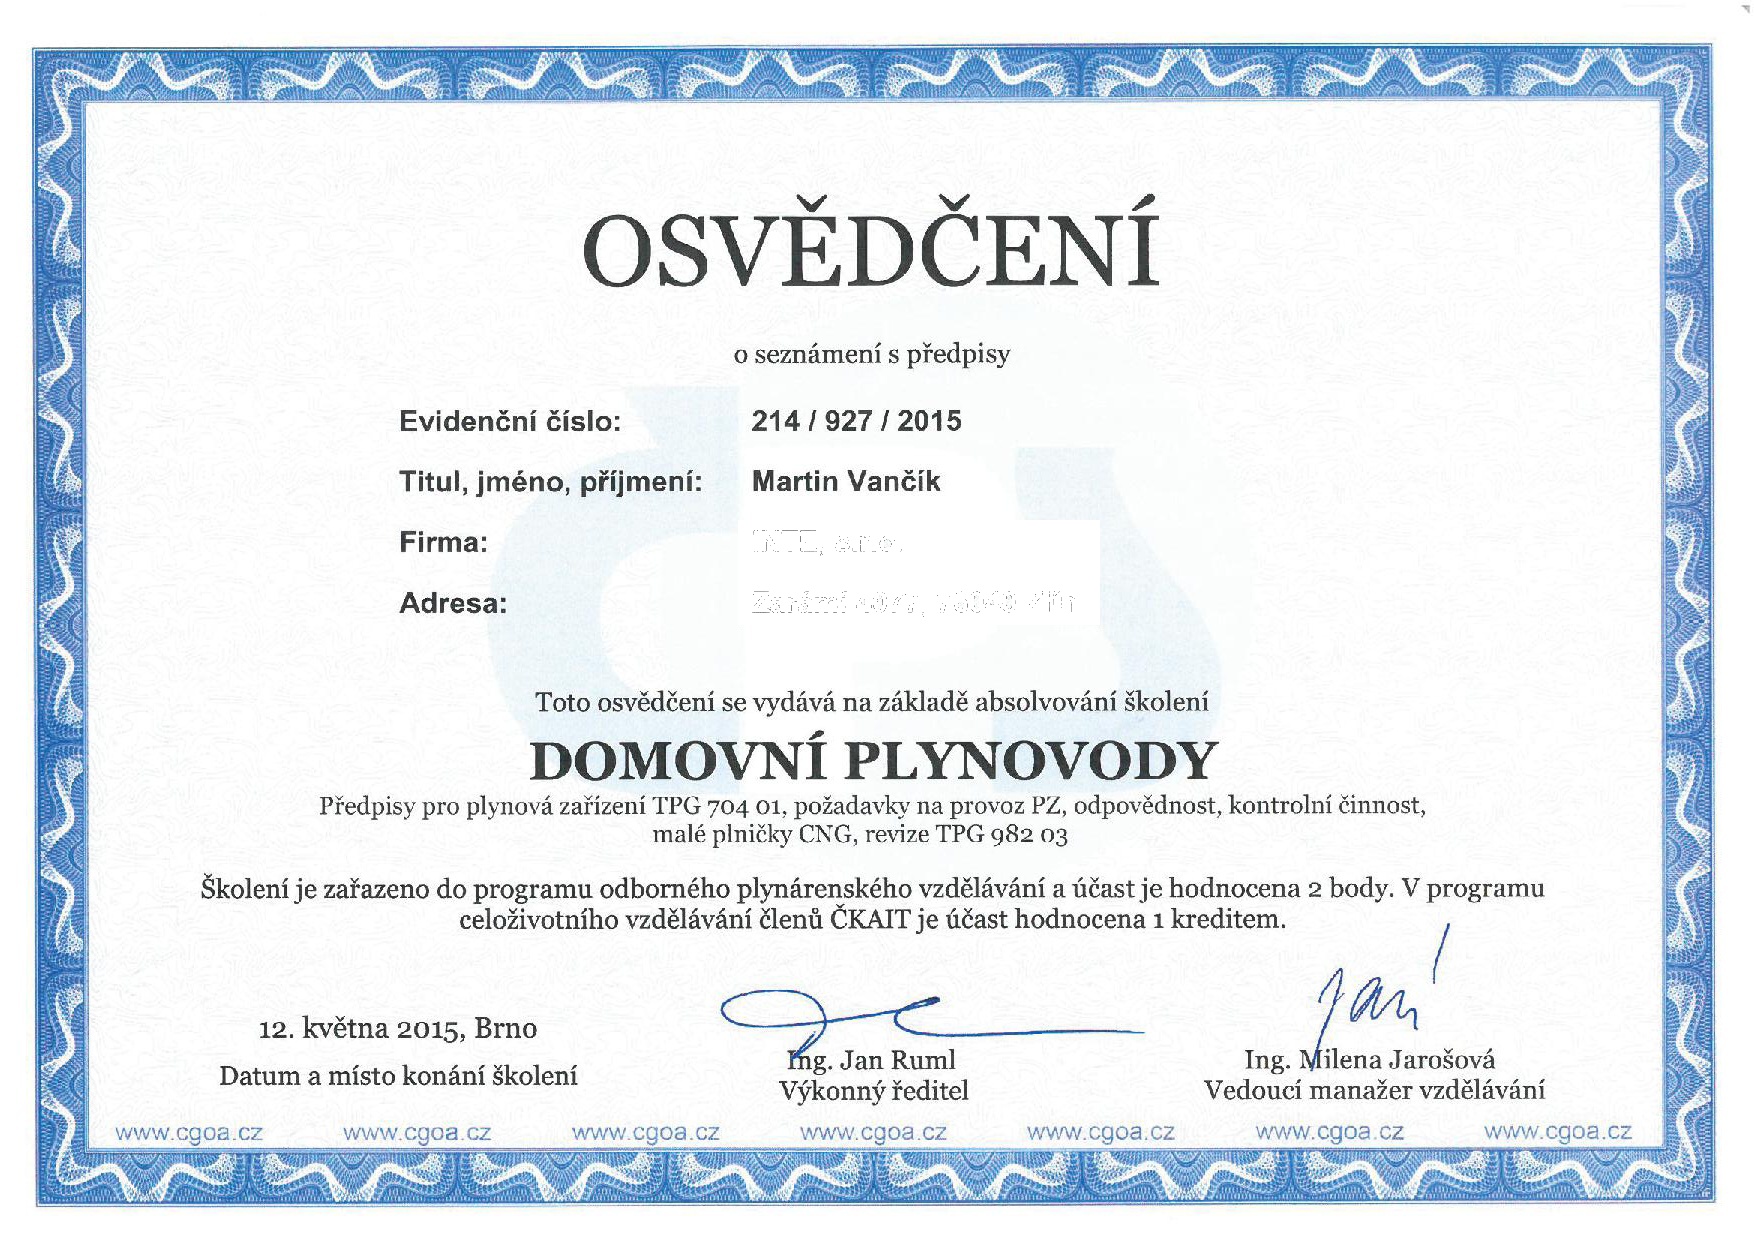 Osvědčení o školení_Domovní Plynovody_Brno_12.05.2015